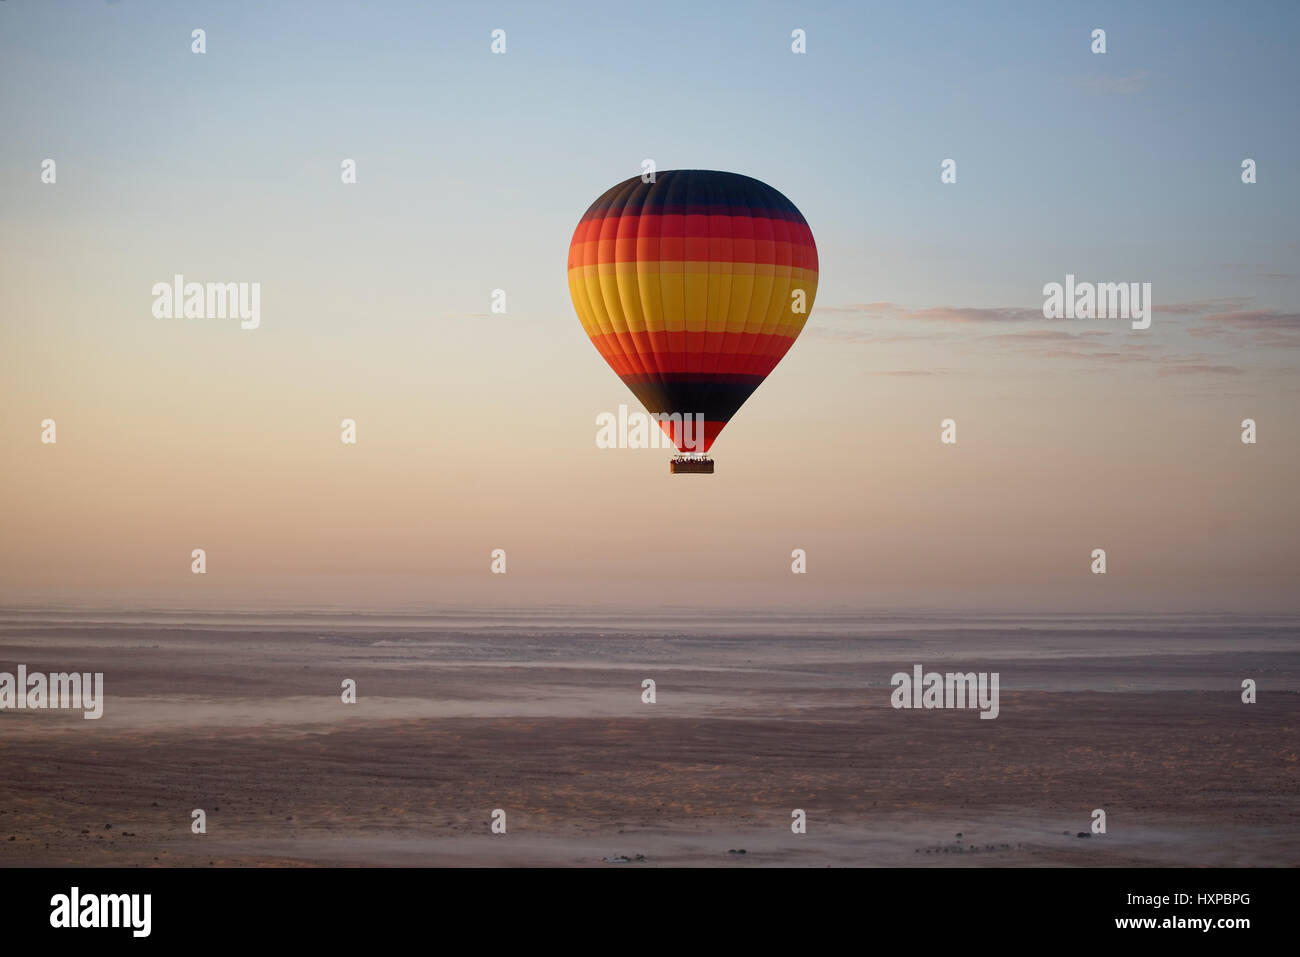 Balooning over the Arabian desert Stock Photo